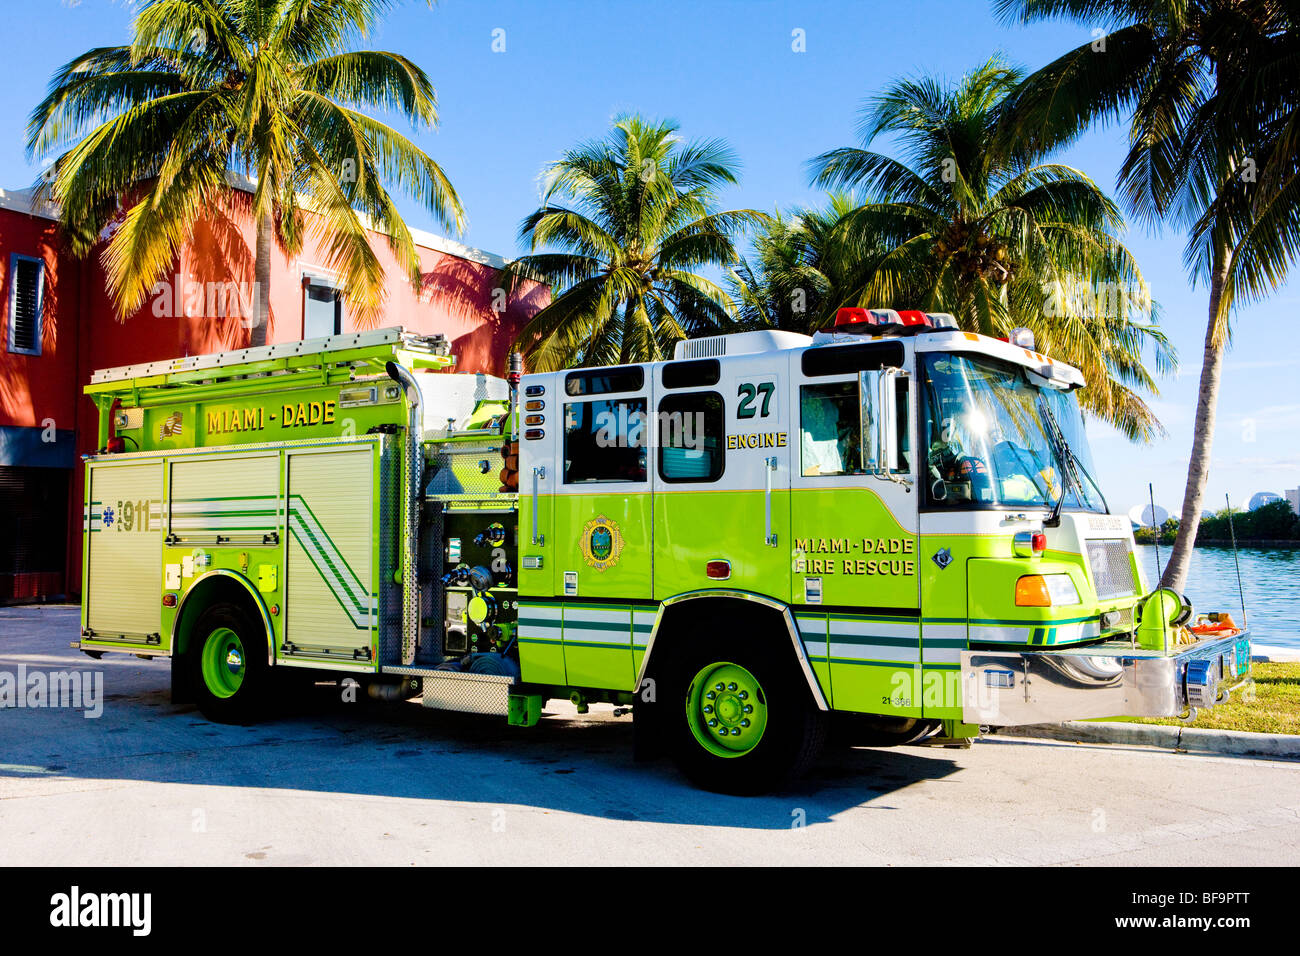 fire engine, Miami, Florida, USA Stock Photo